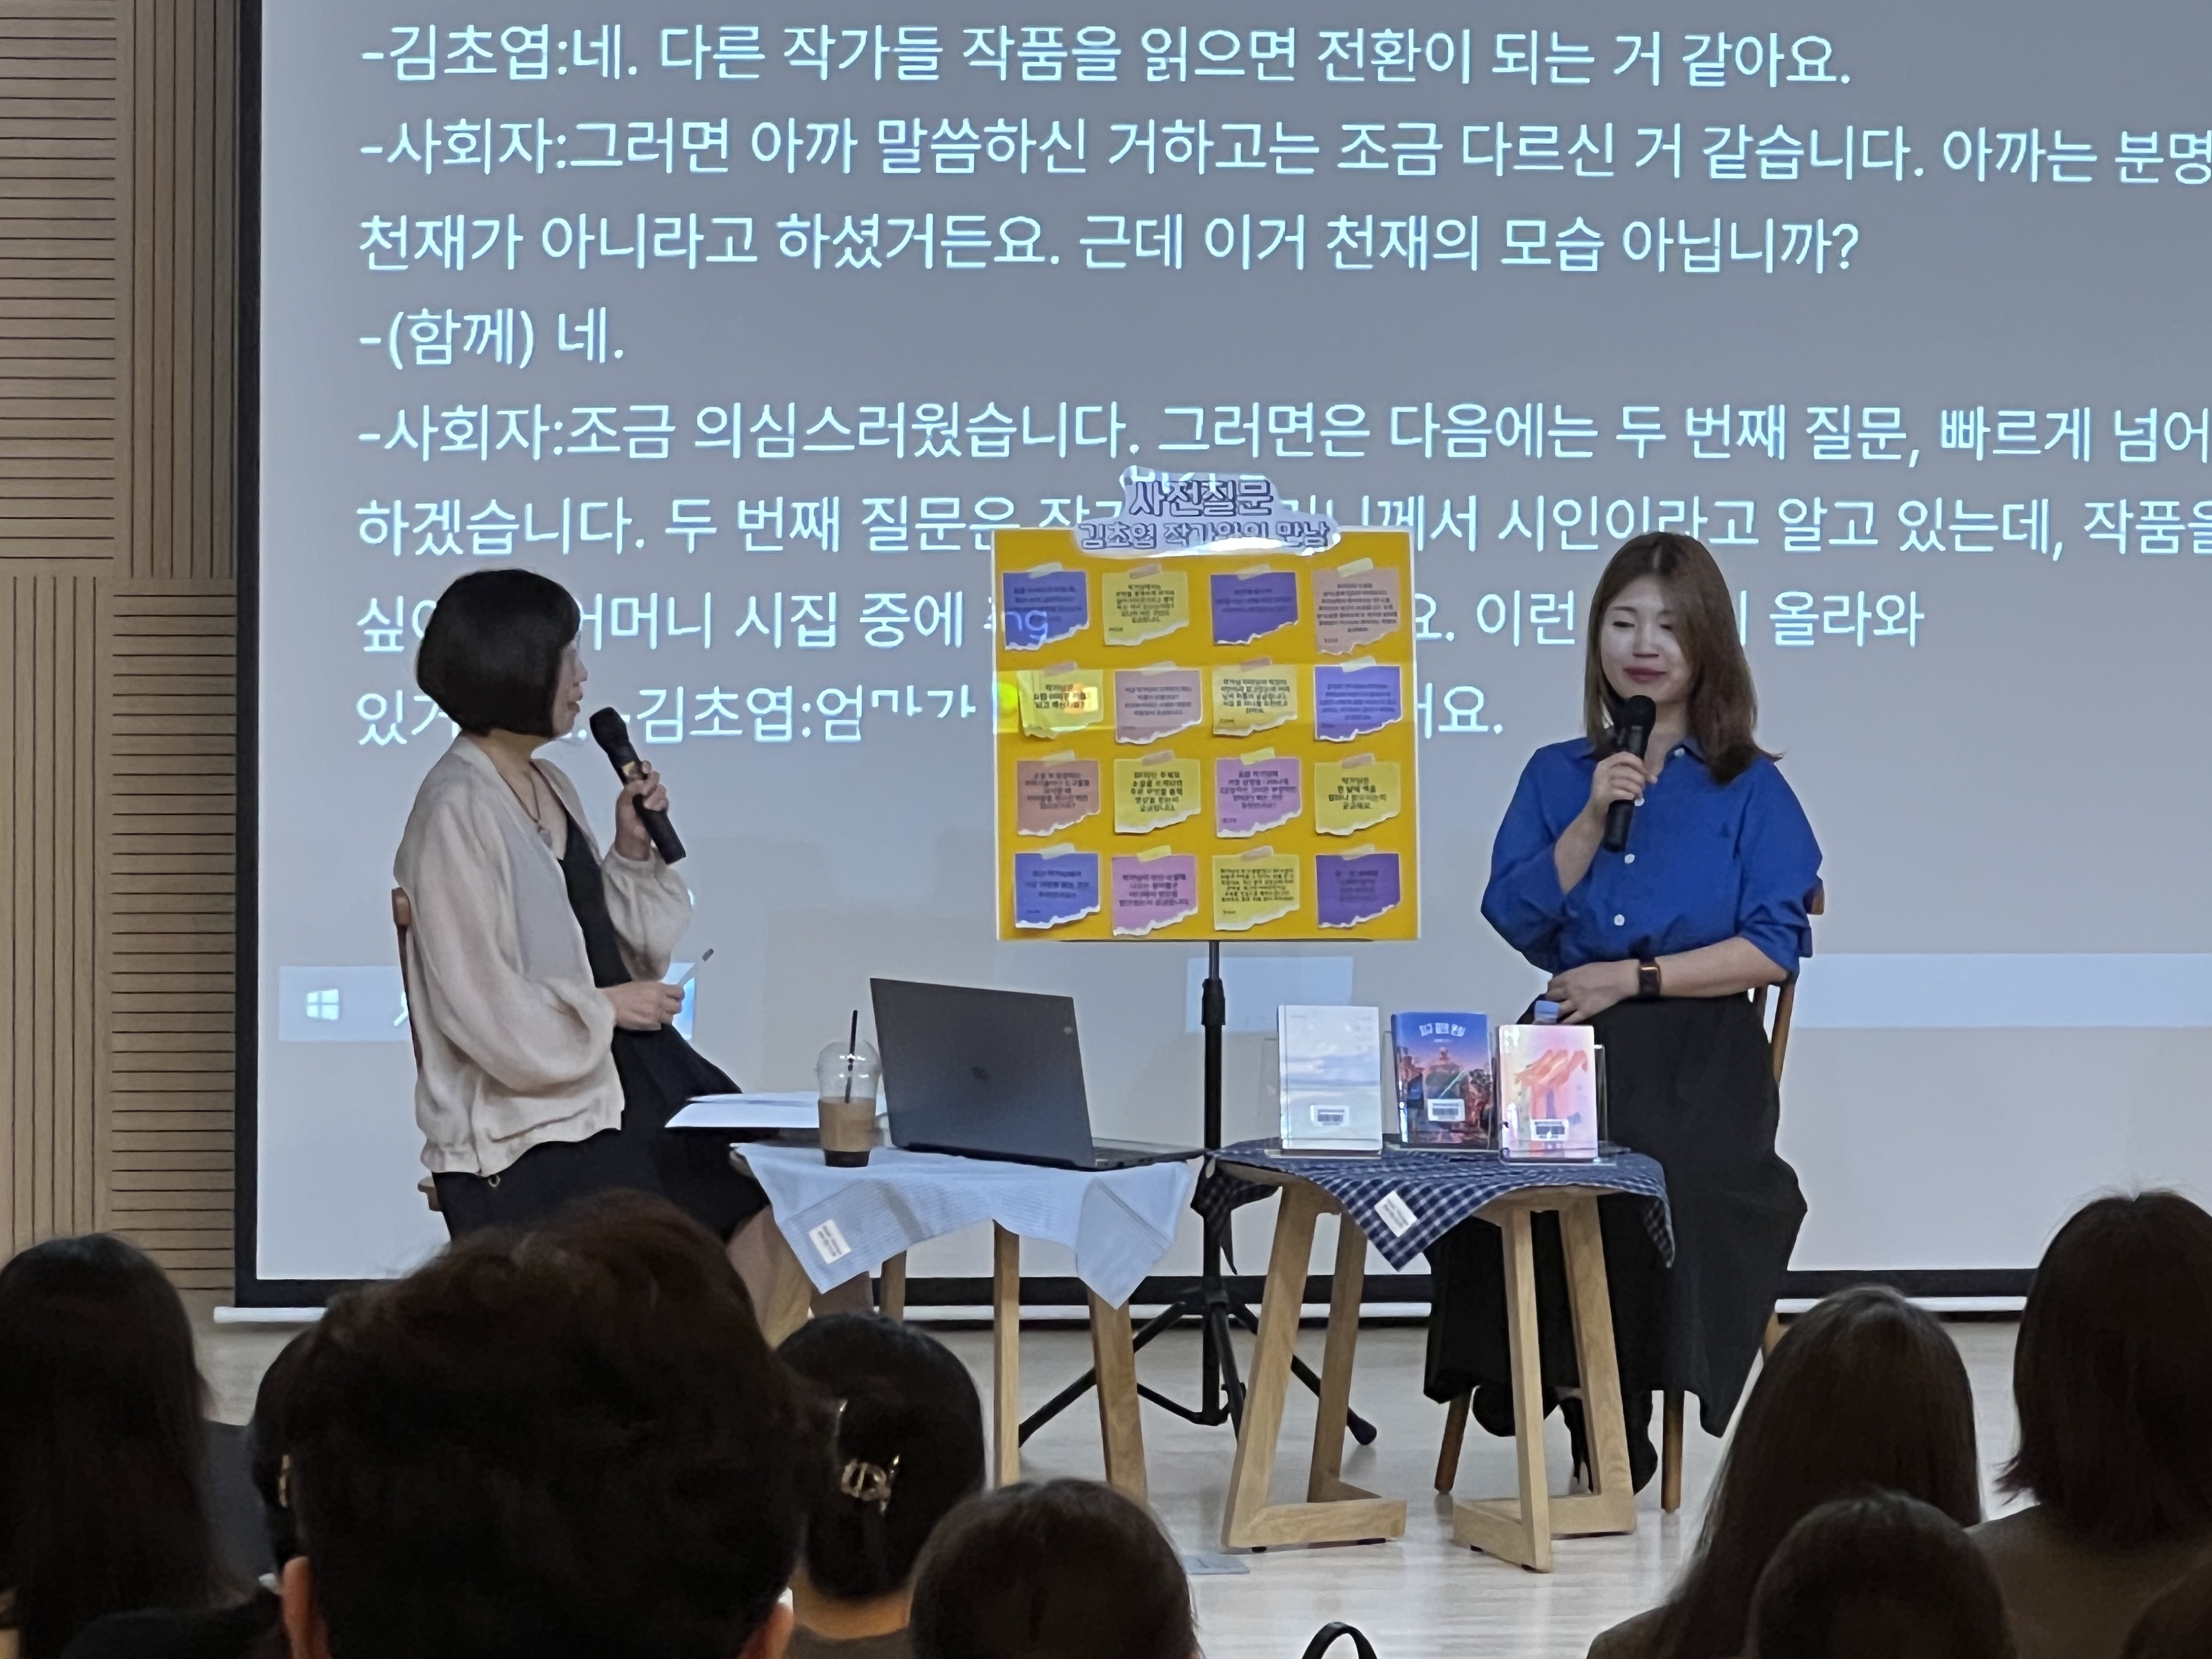 <인문학페스티벌> 김초엽작가와의 만남 북토크 내용